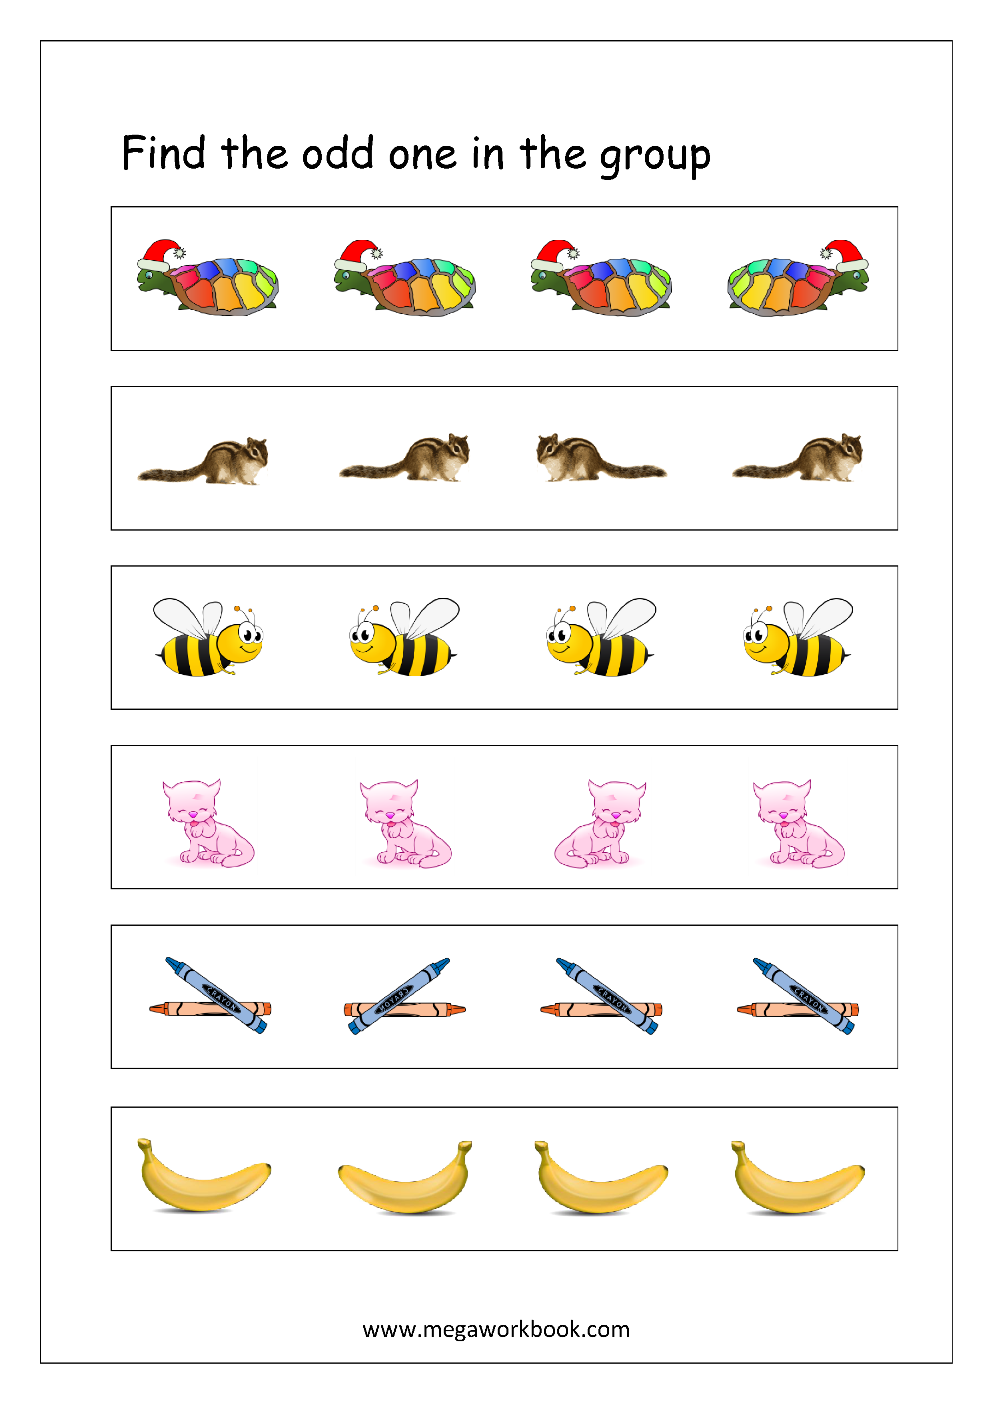 Free Printable Odd One Out Worksheets Logical Thinking Aptitude Worksheets For Kindergarten Preschool Megaworkbook